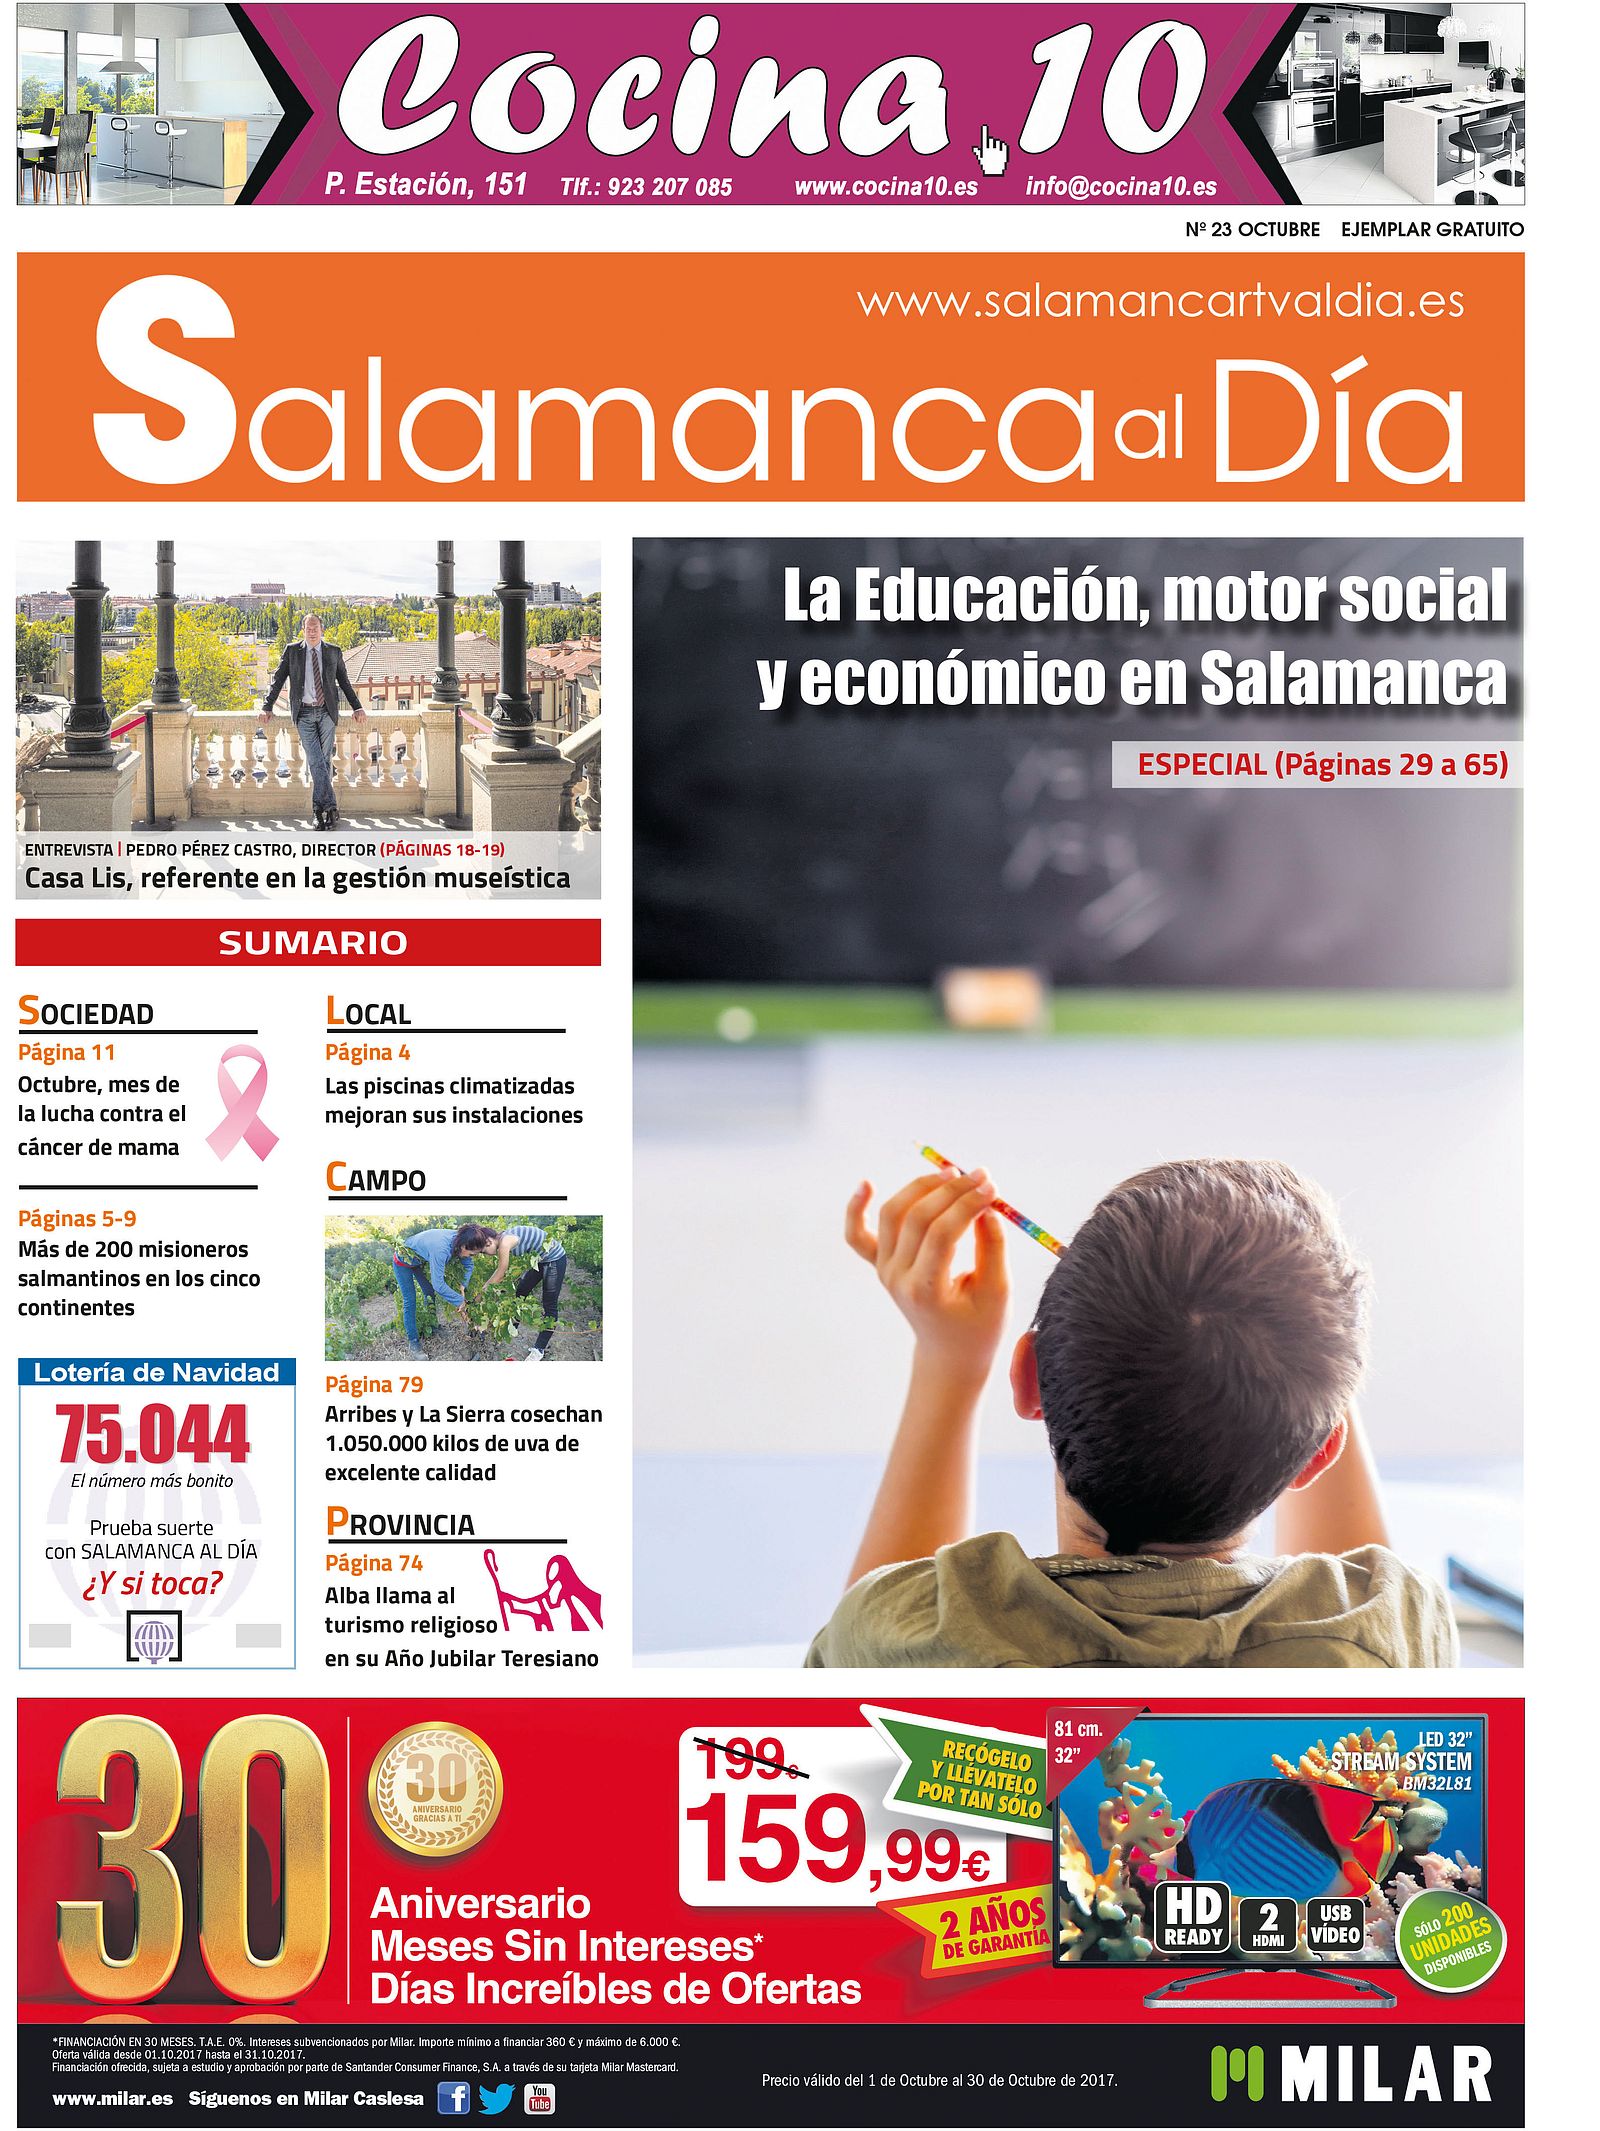 Foto 1 - SALAMANCA AL DÍA saca a la calle su número de octubre con una mirada puesta en la Educación